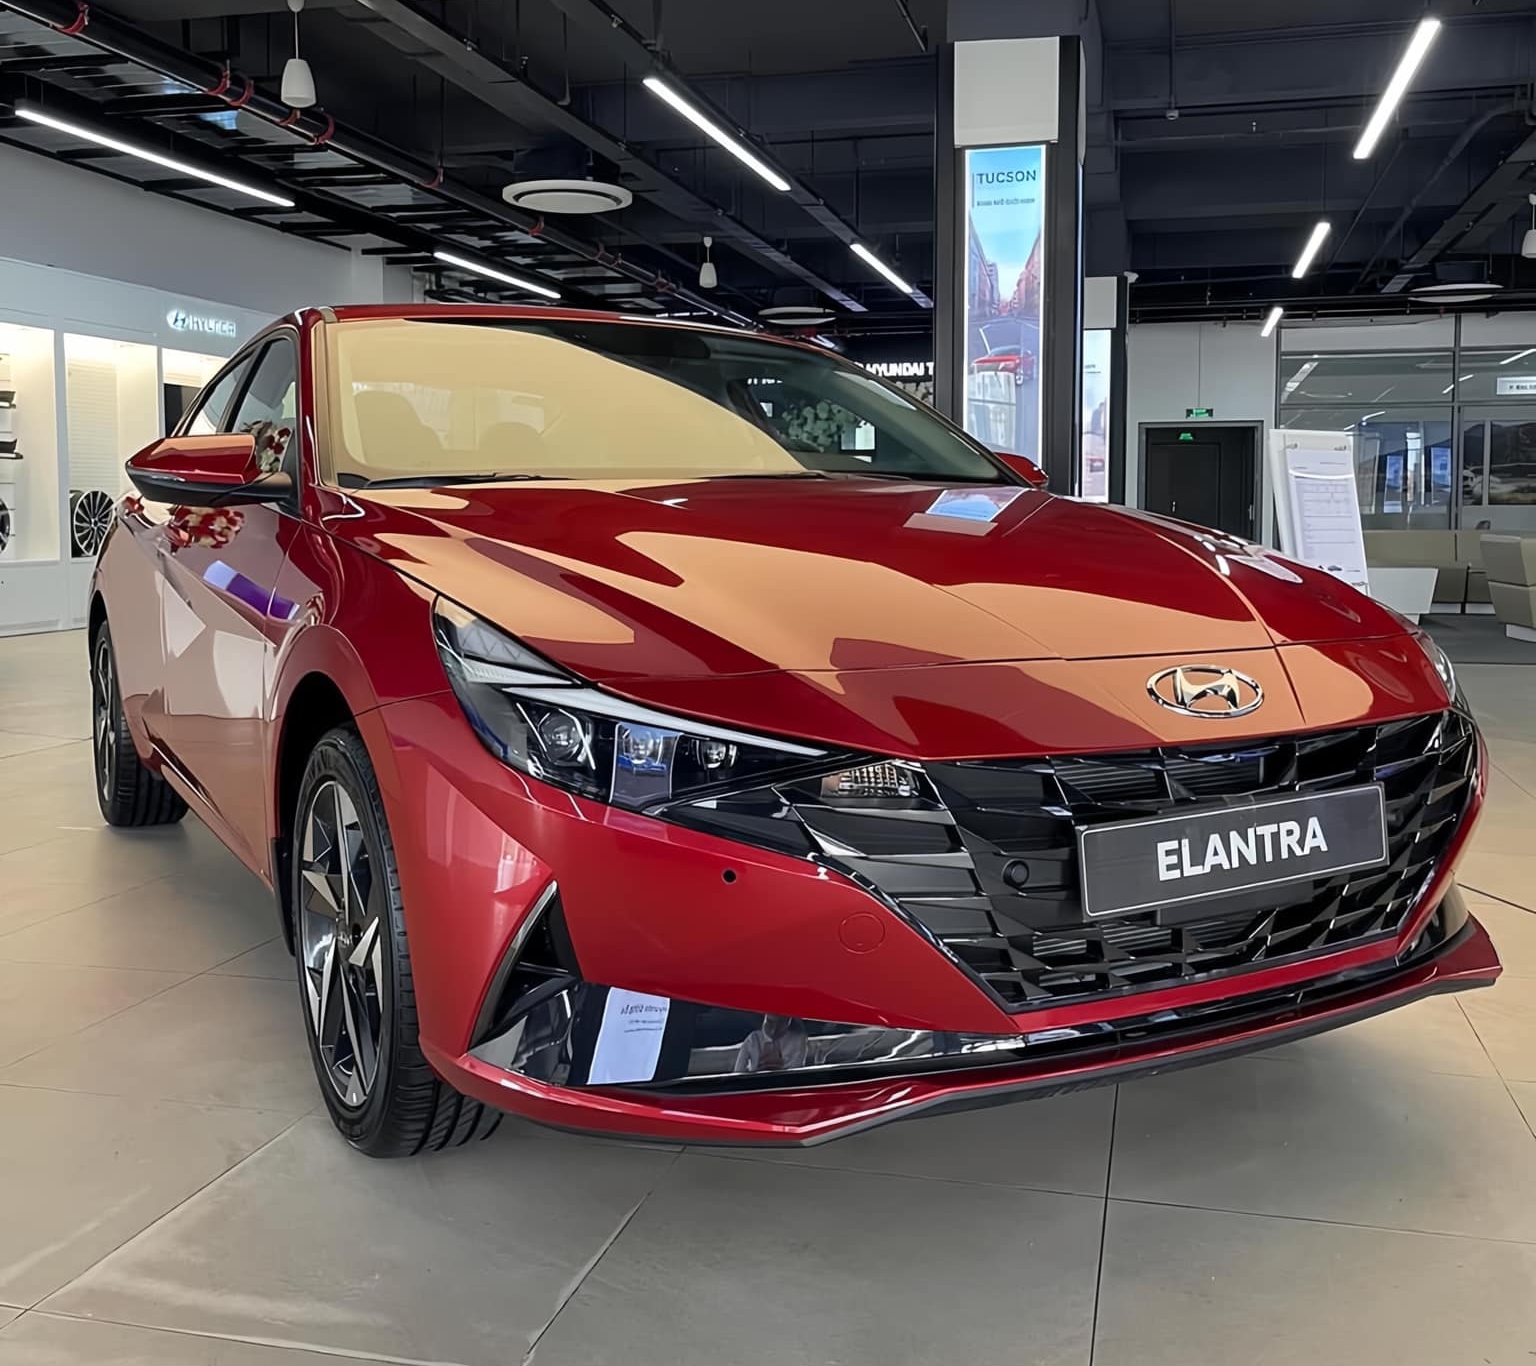 Hyundai Elantra giảm giá tới 125 triệu tại đại lý: Bản cao cấp còn hơn 600 triệu, đấu Civic với giá chỉ ngang City- Ảnh 1.